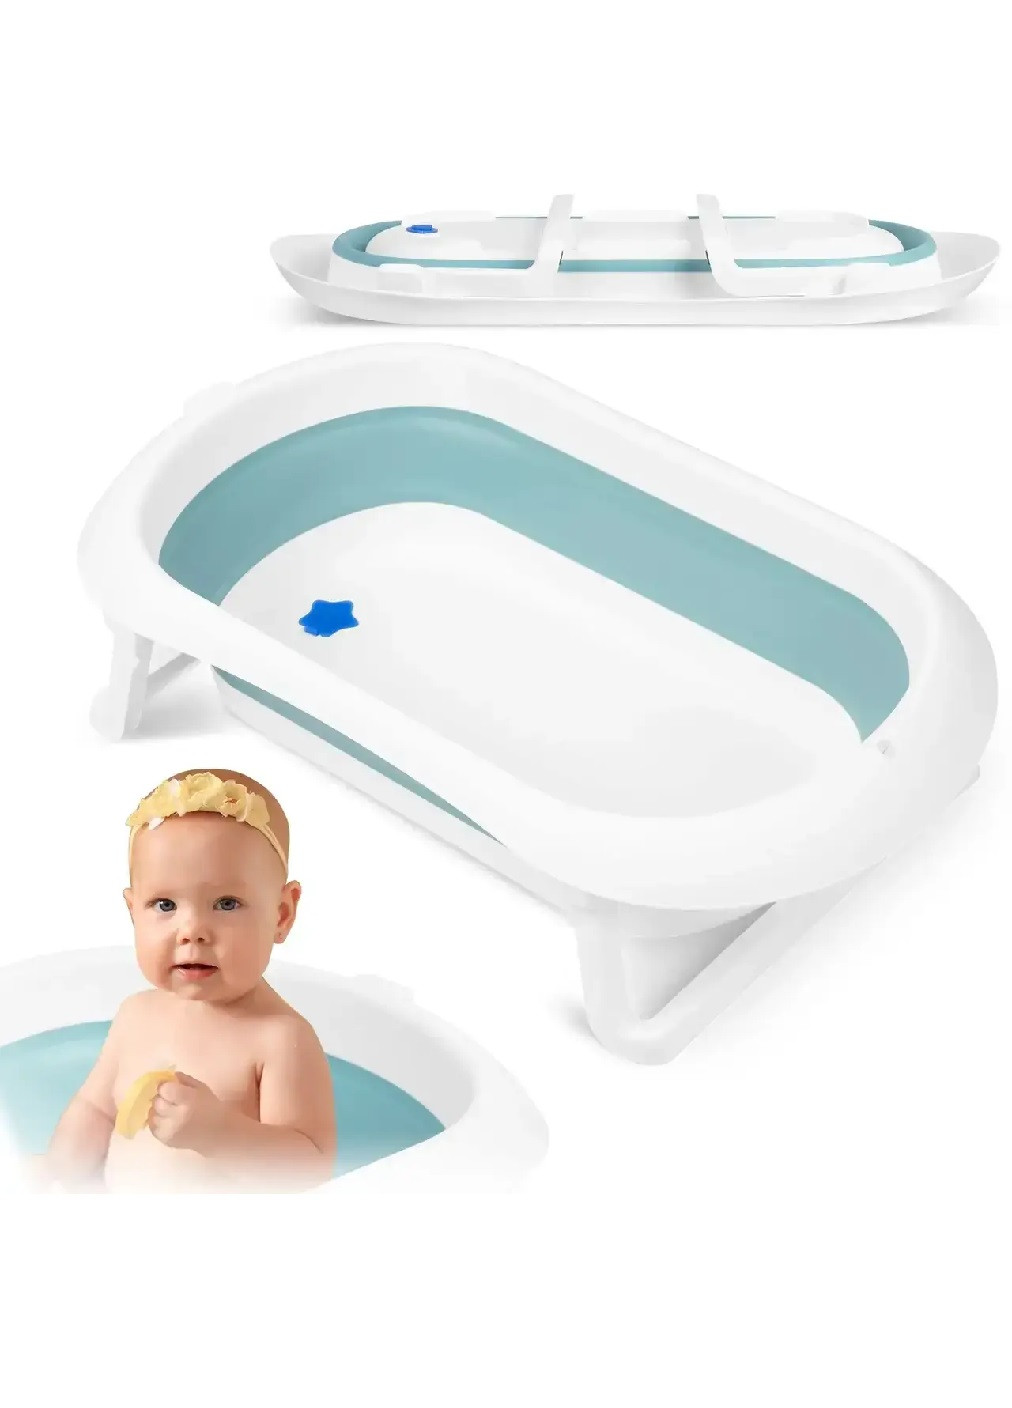 Складная компактная портативная ванночка с подушкой нескользящей отделкой для детей малышей (475152-Prob) Бело-голубая Unbranded (262452217)